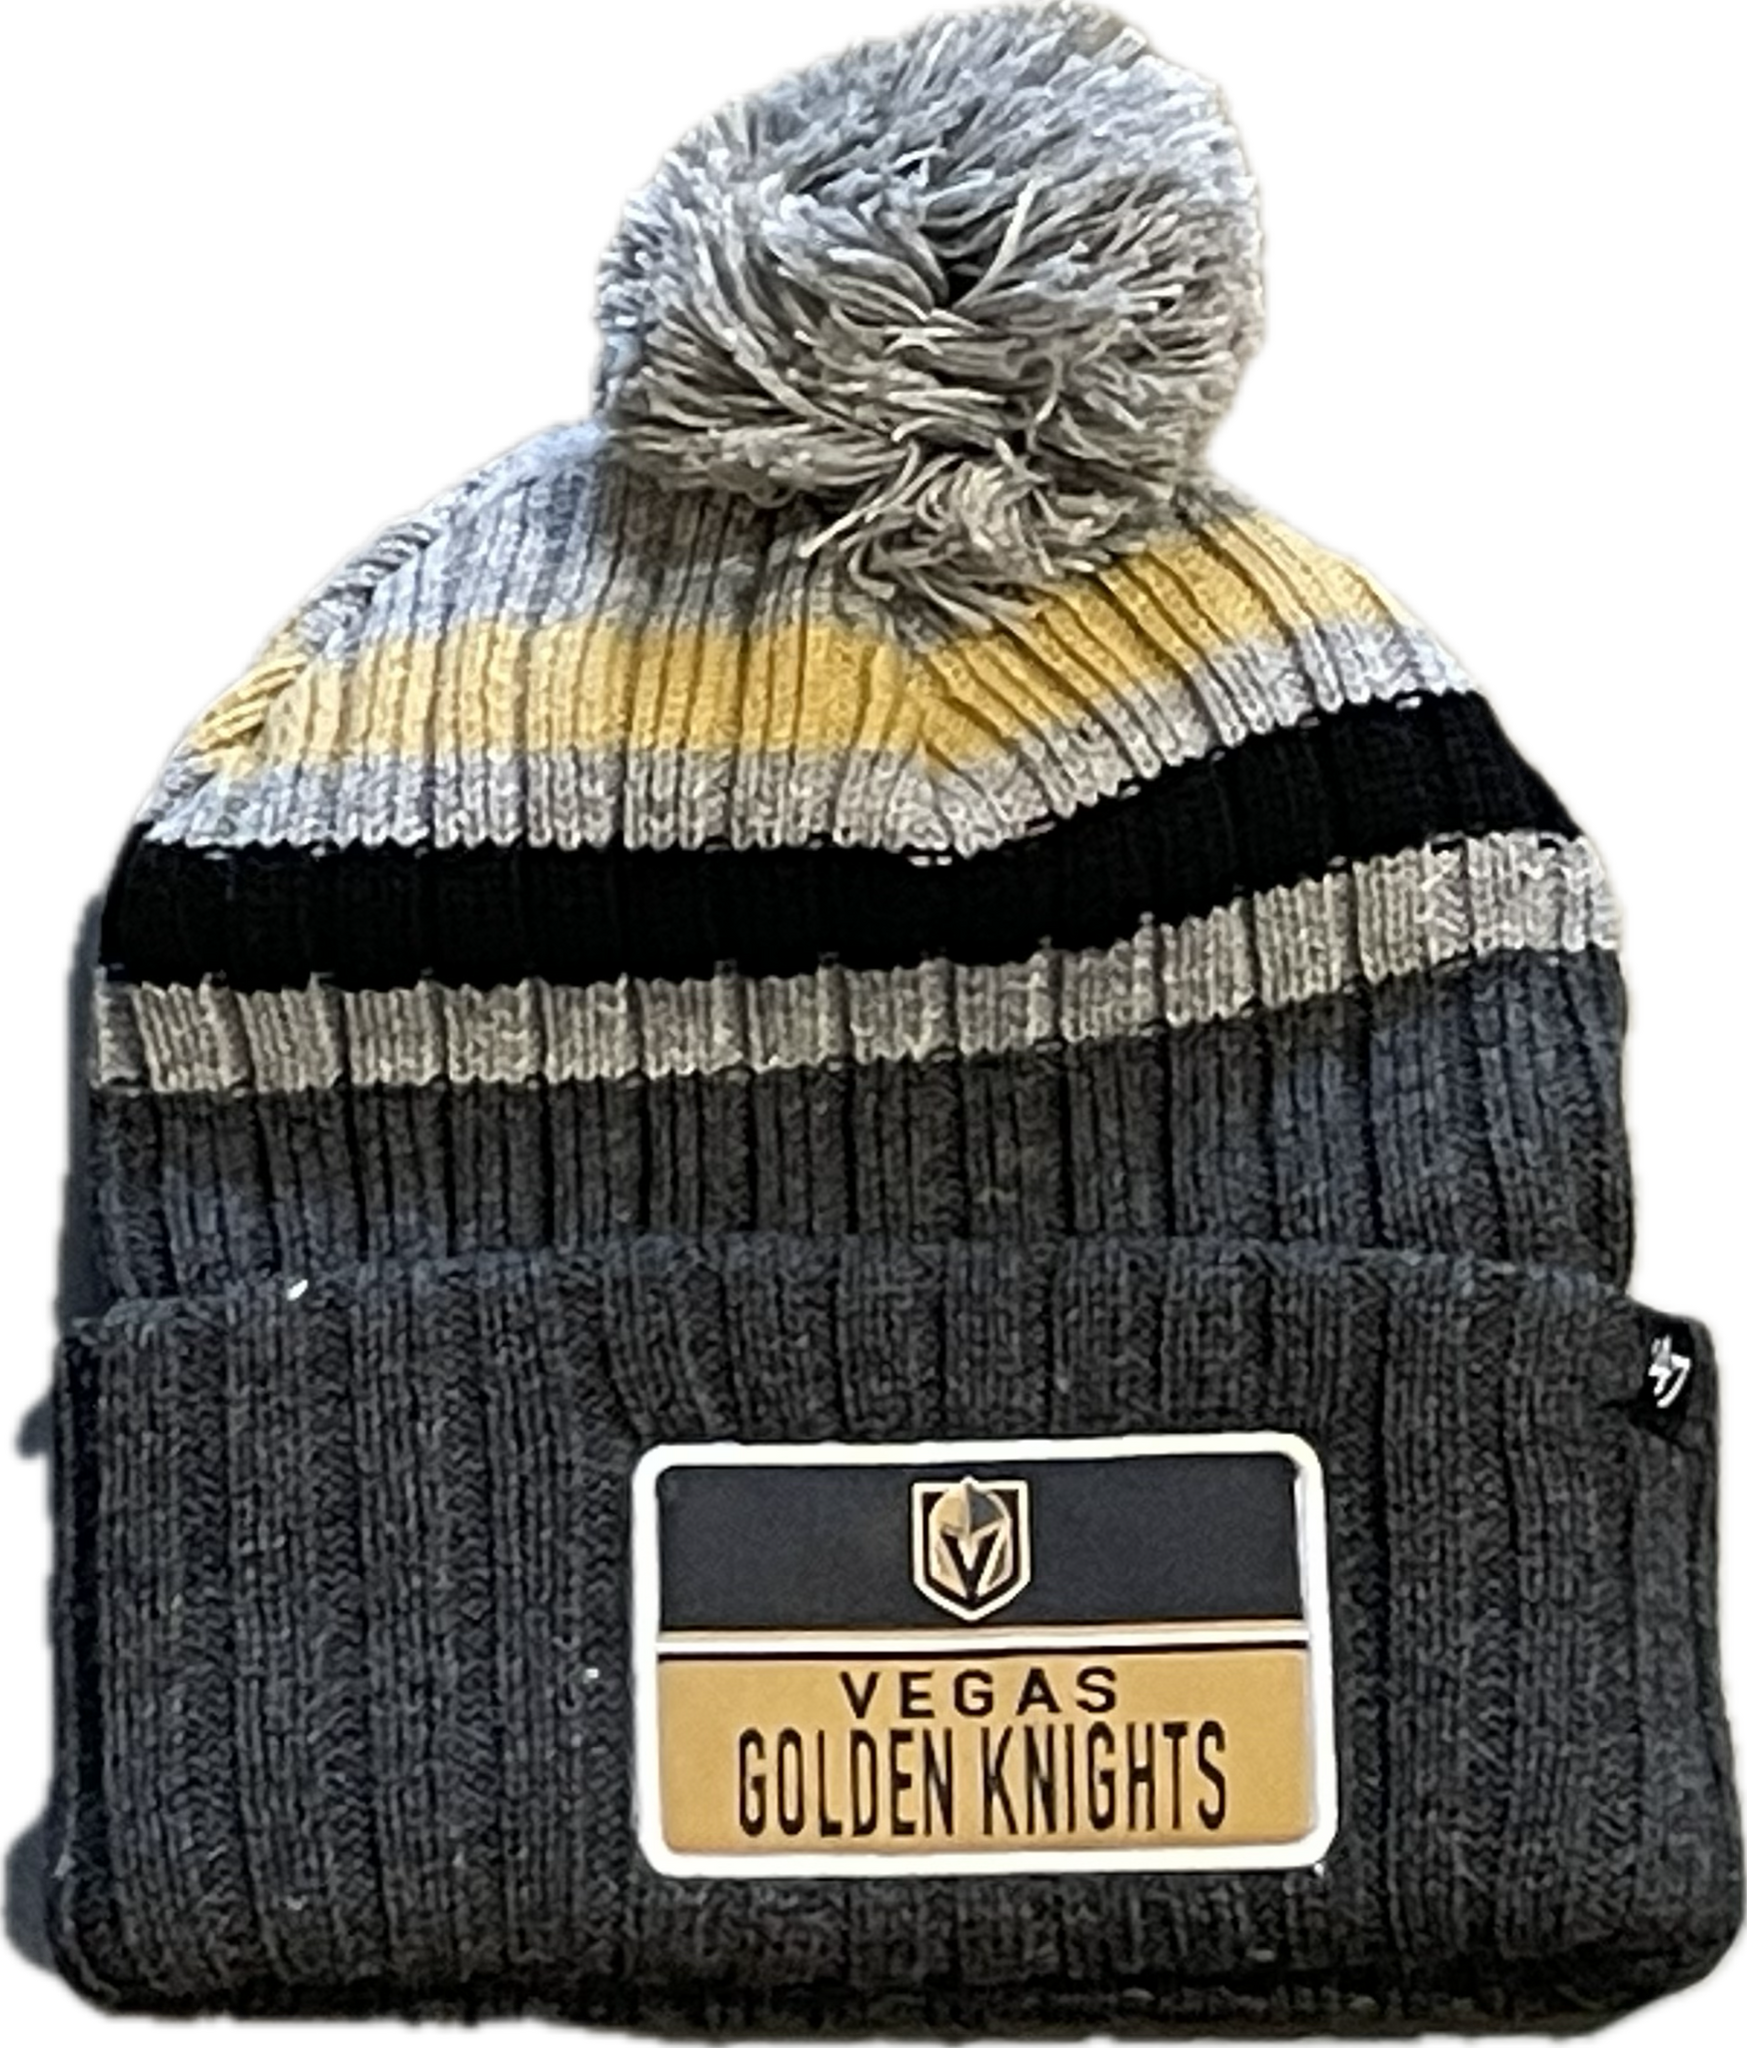 Vegas Golden Knights – Sports Town USA